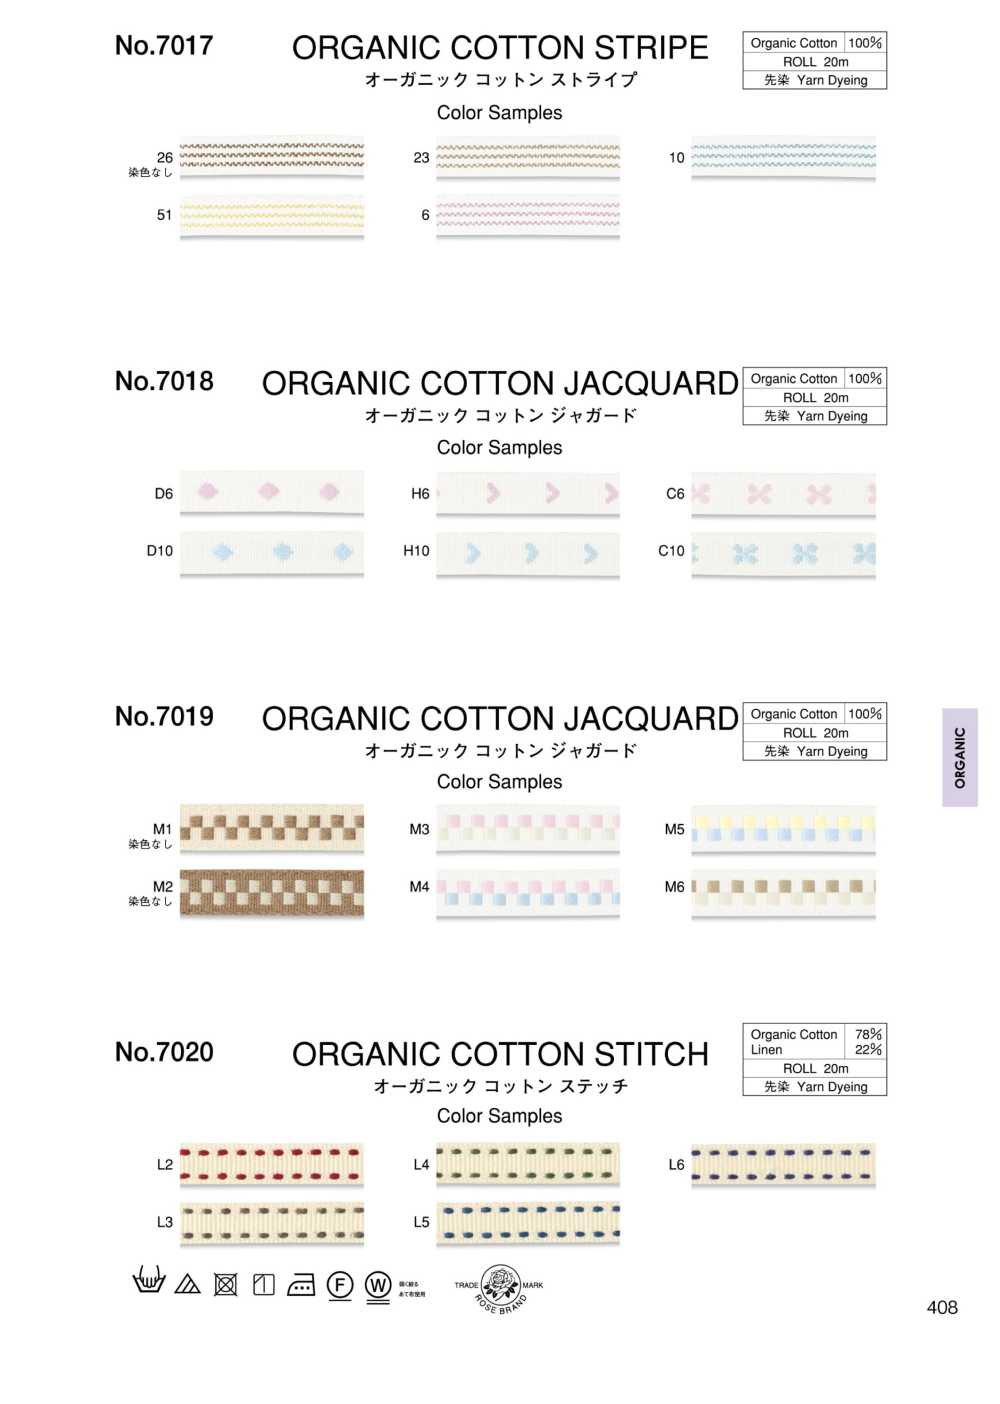 7018 Organic Cotton Jacquard[Ribbon Tape Cord] ROSE BRAND (Marushin)